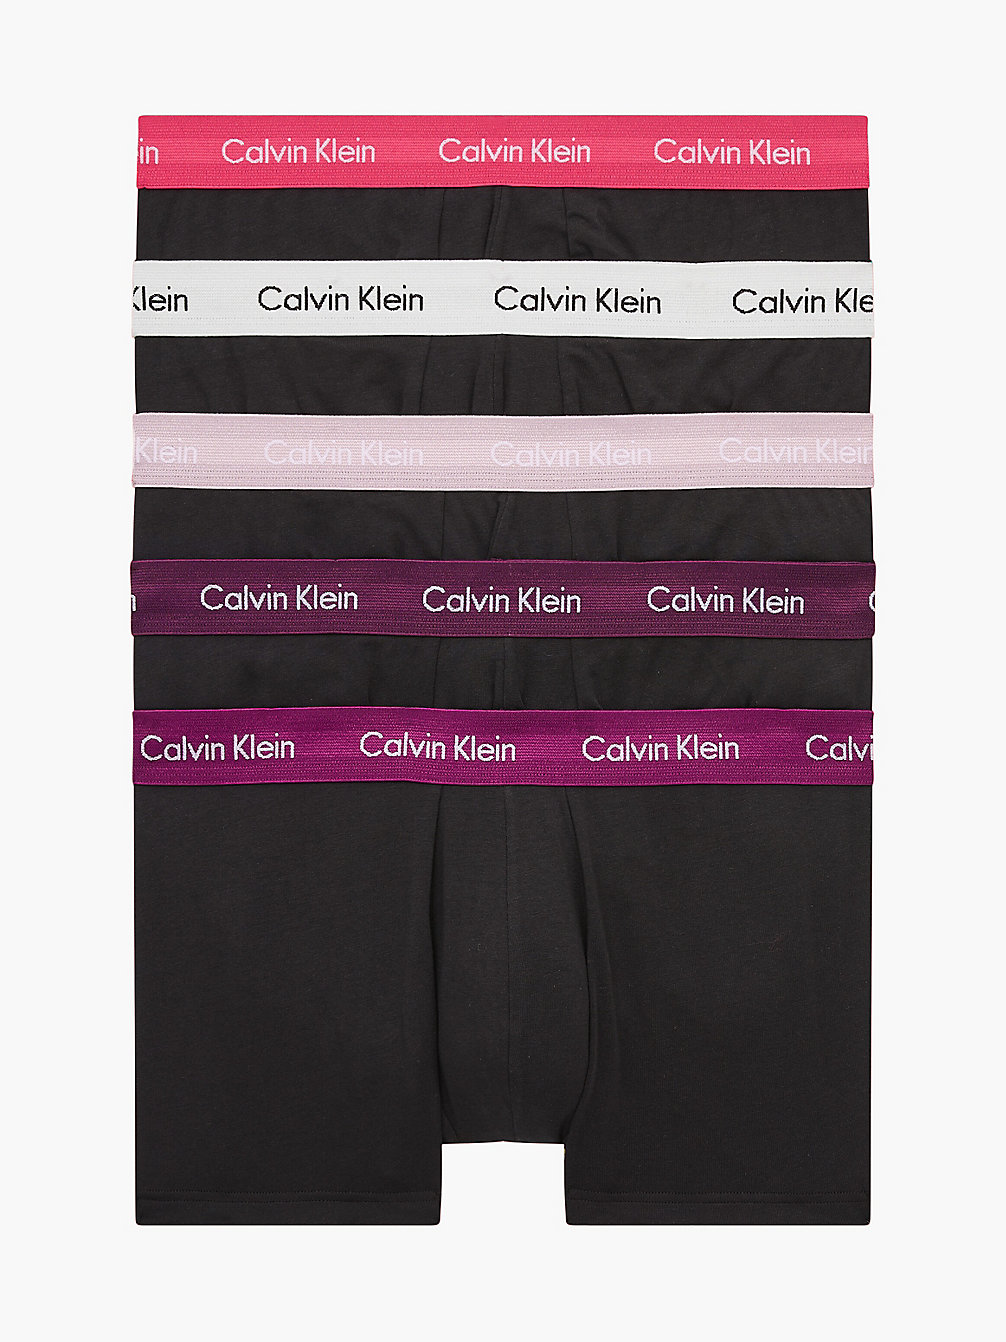 B-RHN, NRV, BR WT, PNK SPL, BRY MAR 5 Pack Low Rise Trunks undefined men Calvin Klein